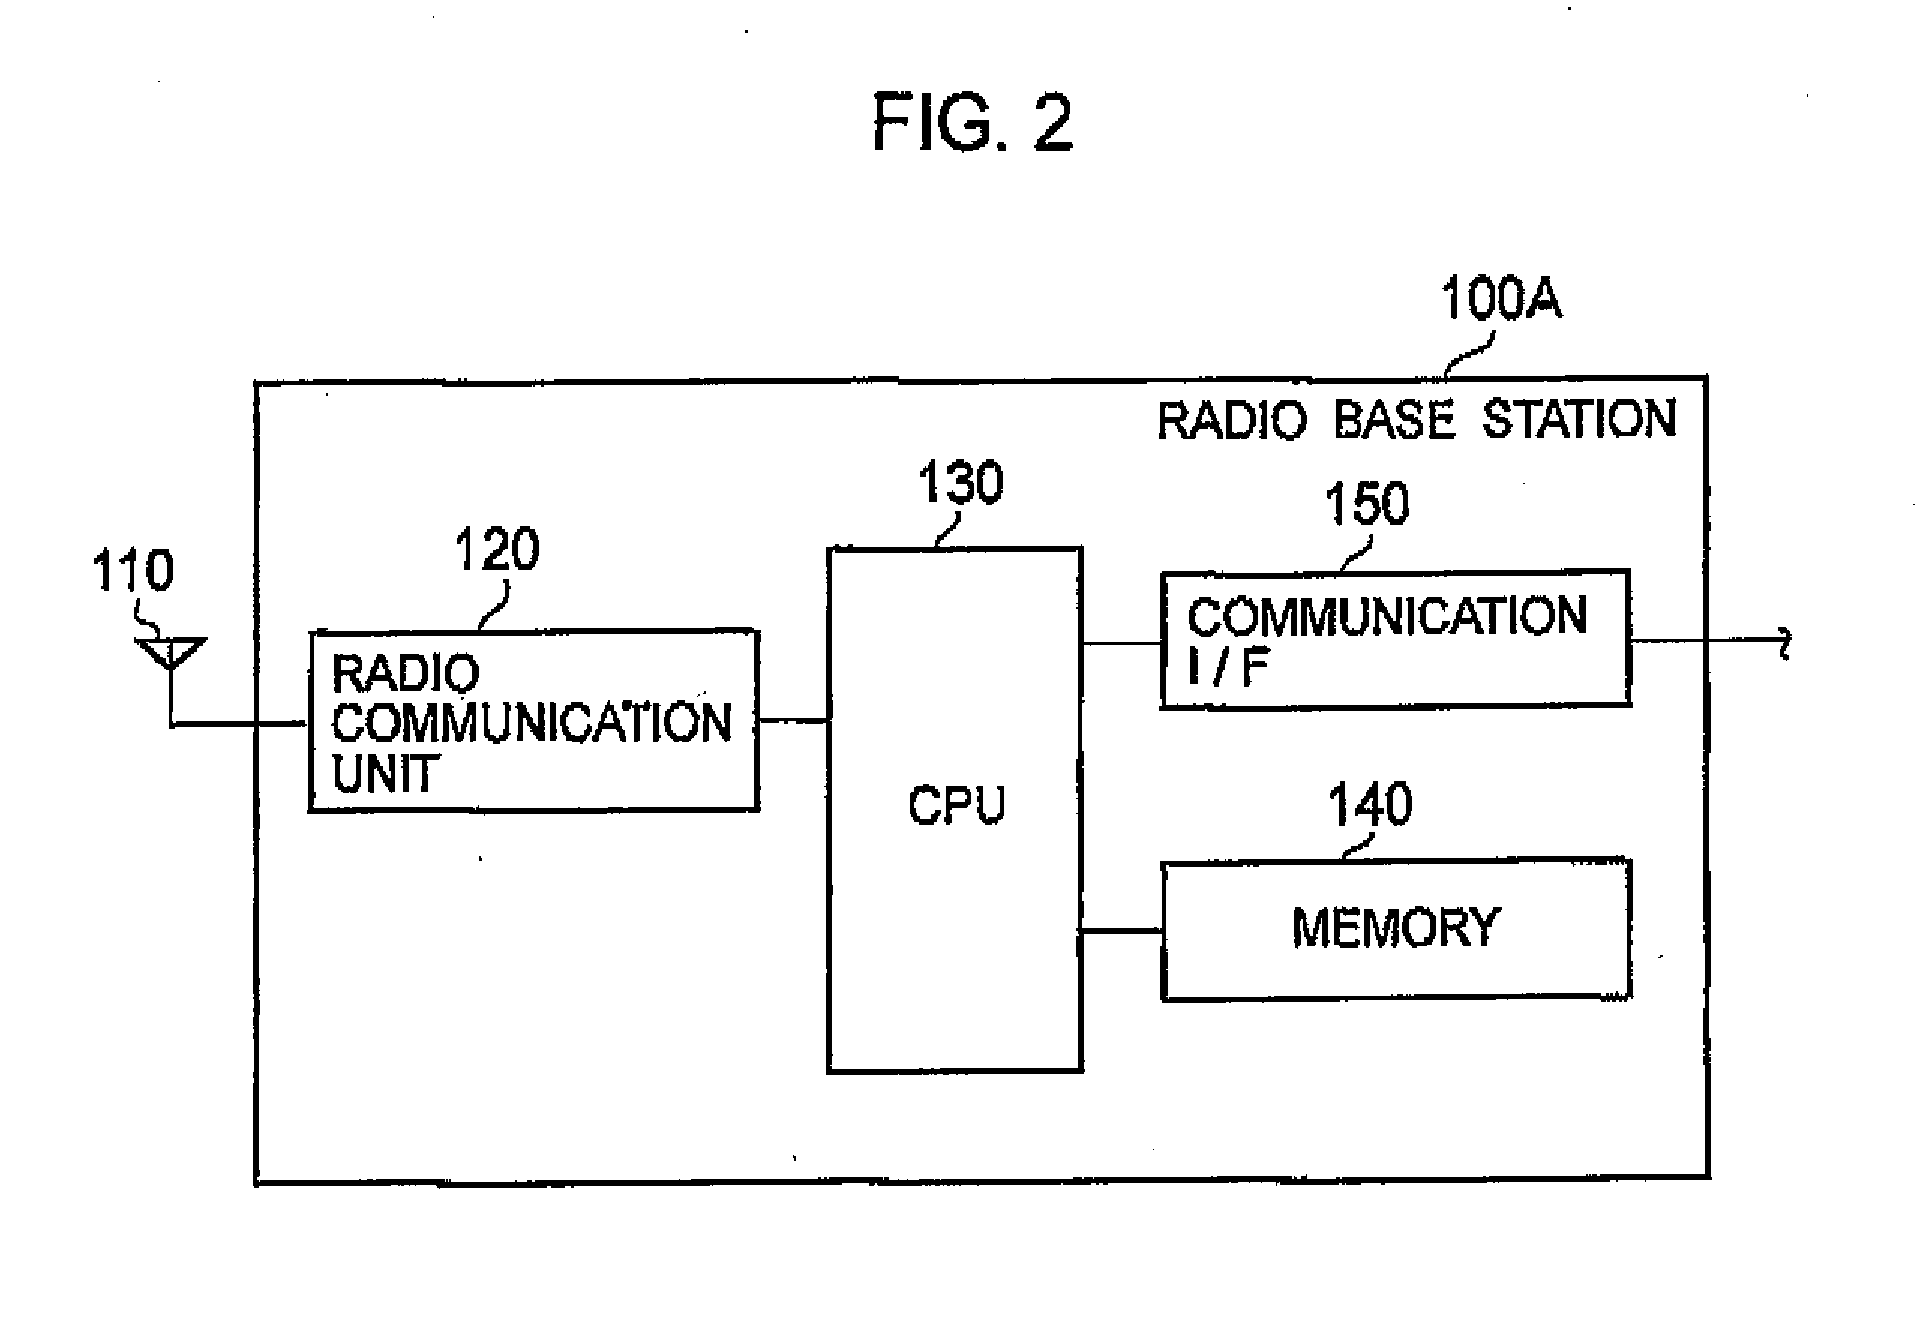 Radio Base Station and Radio Communication Method